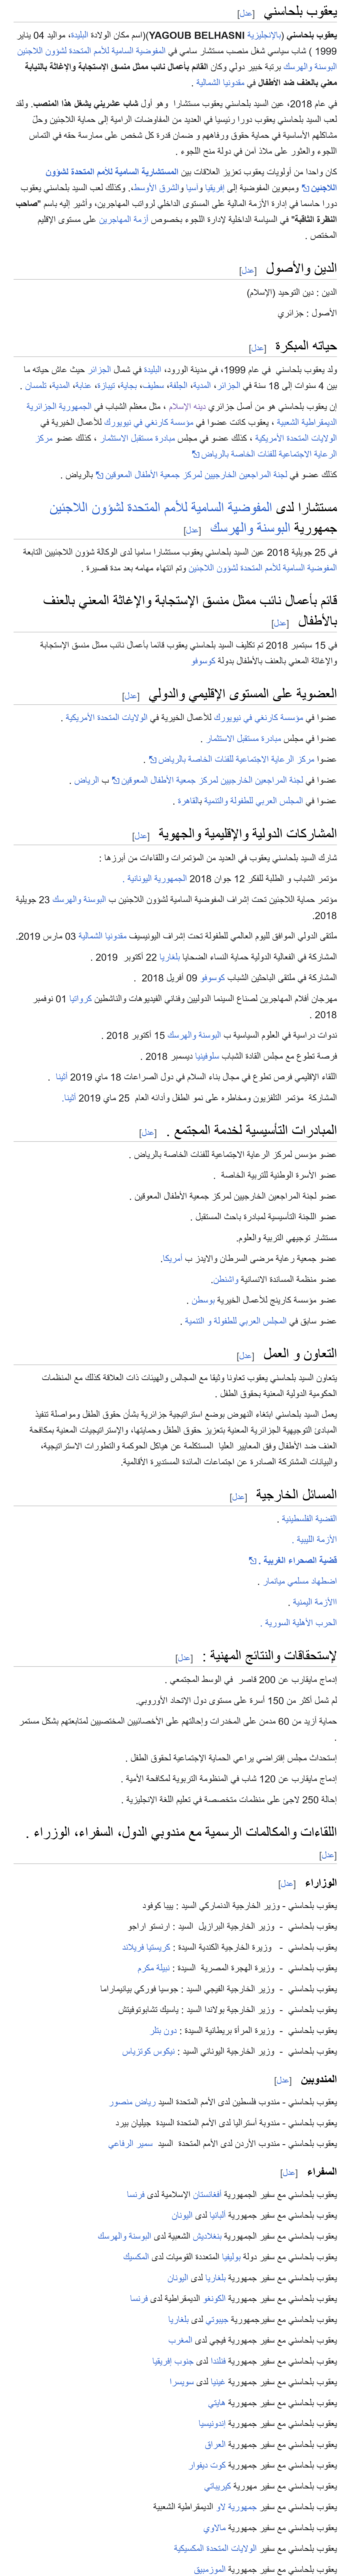 صفحة في ويكيبيديا تحمل أسم belhasni yakoub لا تخلو من الأكاذيب (المصدر: wikipedia / مستخدم:YacoubBelhasni)